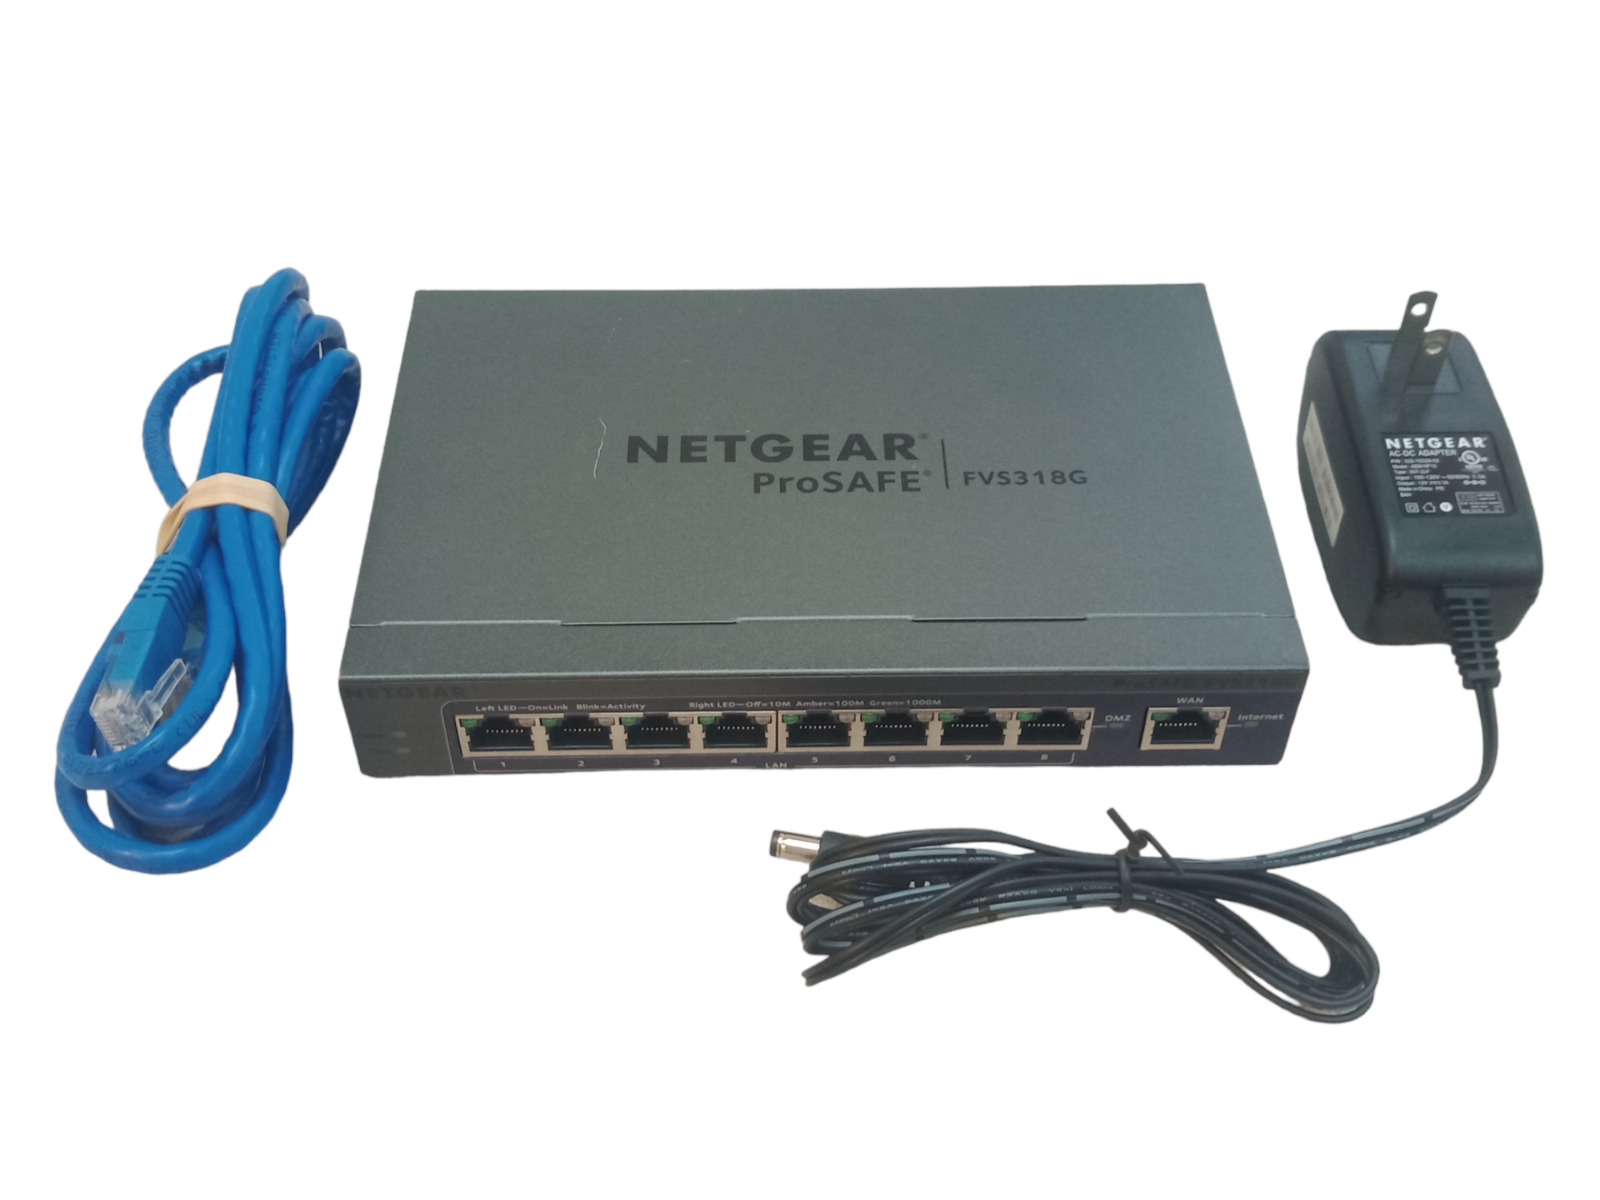 Netgear FVS318G v2 ProSafe 8-port Business-class Gigabit VPN Firewall | Working